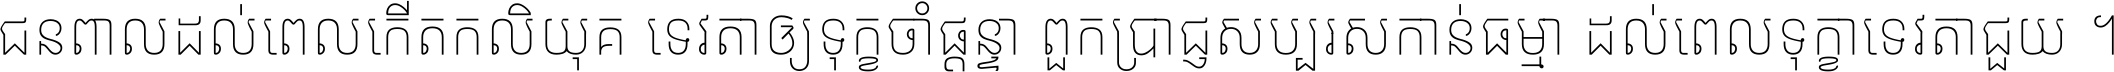 Noto Sans Khmer UI Condensed Thin